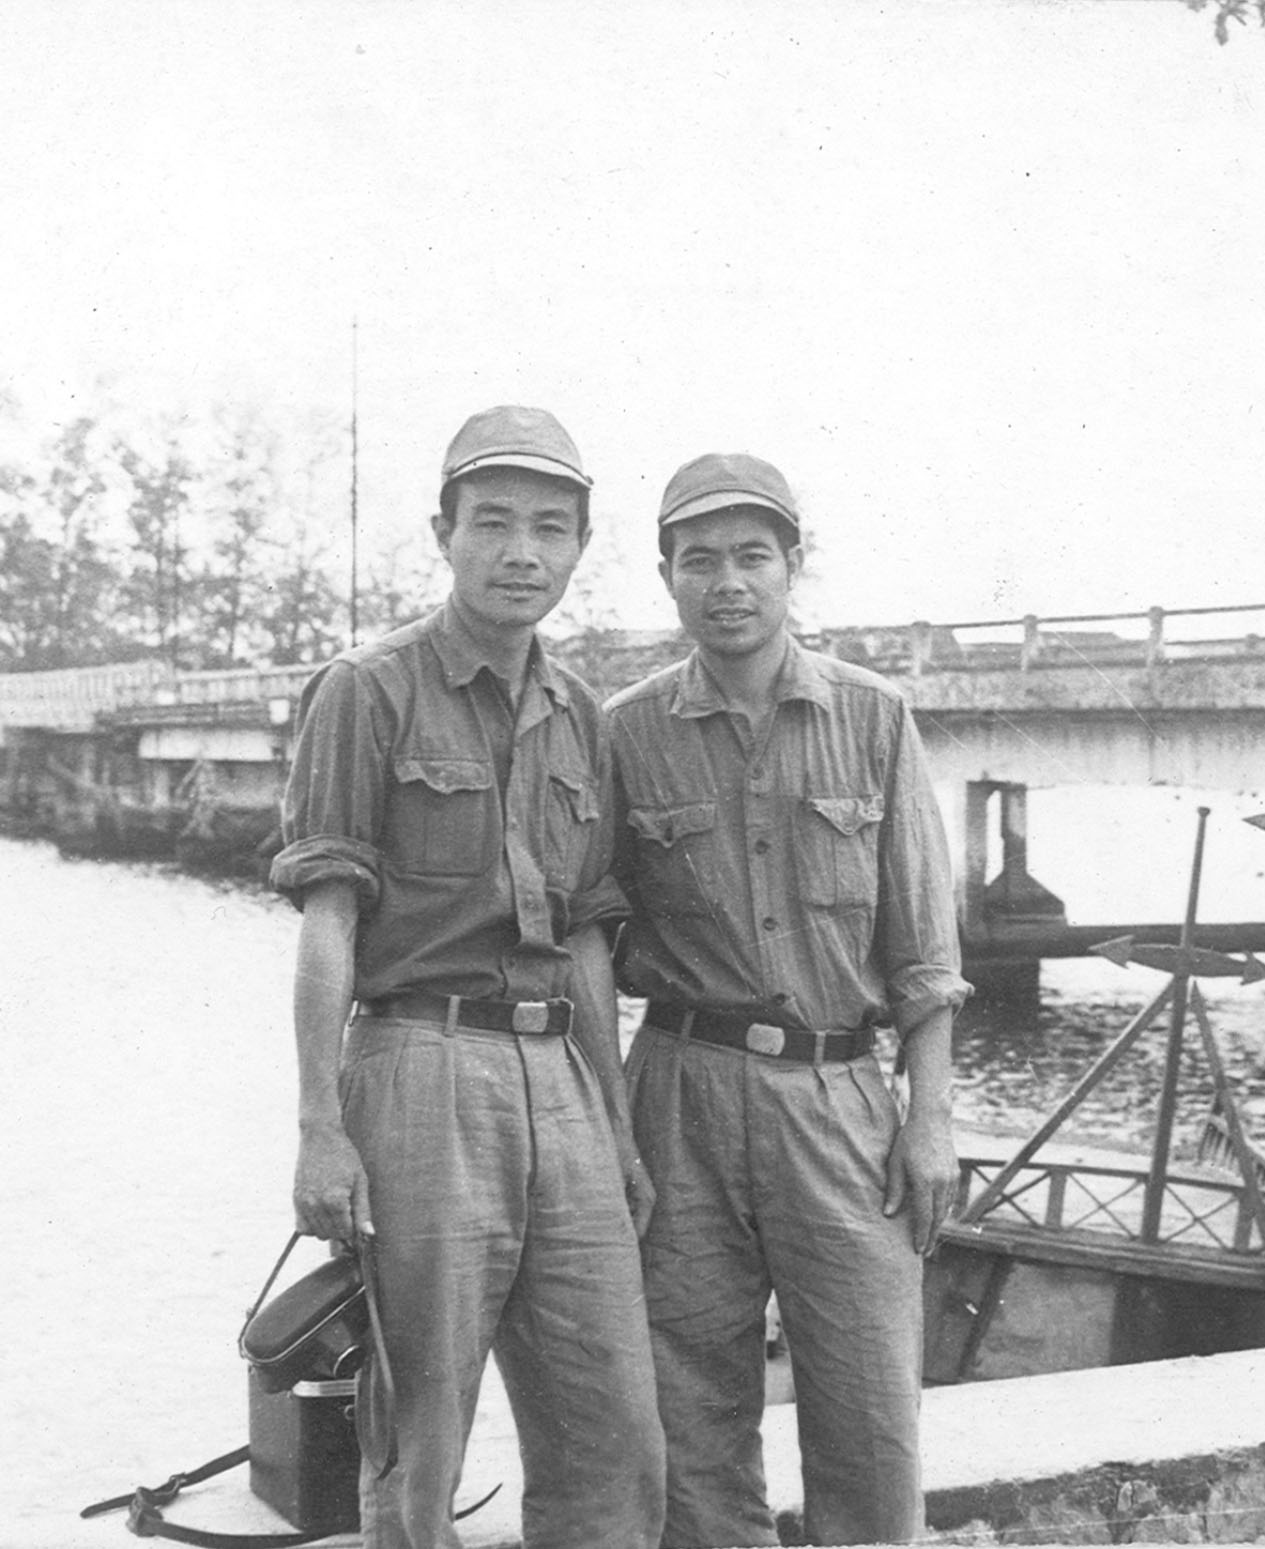 Phóng viên Vũ Duy Thông (bên trái) cùng phóng viên ảnh Văn Hiền tại cầu thị xã Kampot, Campuchia. (Ảnh: Nhân vật cung cấp)